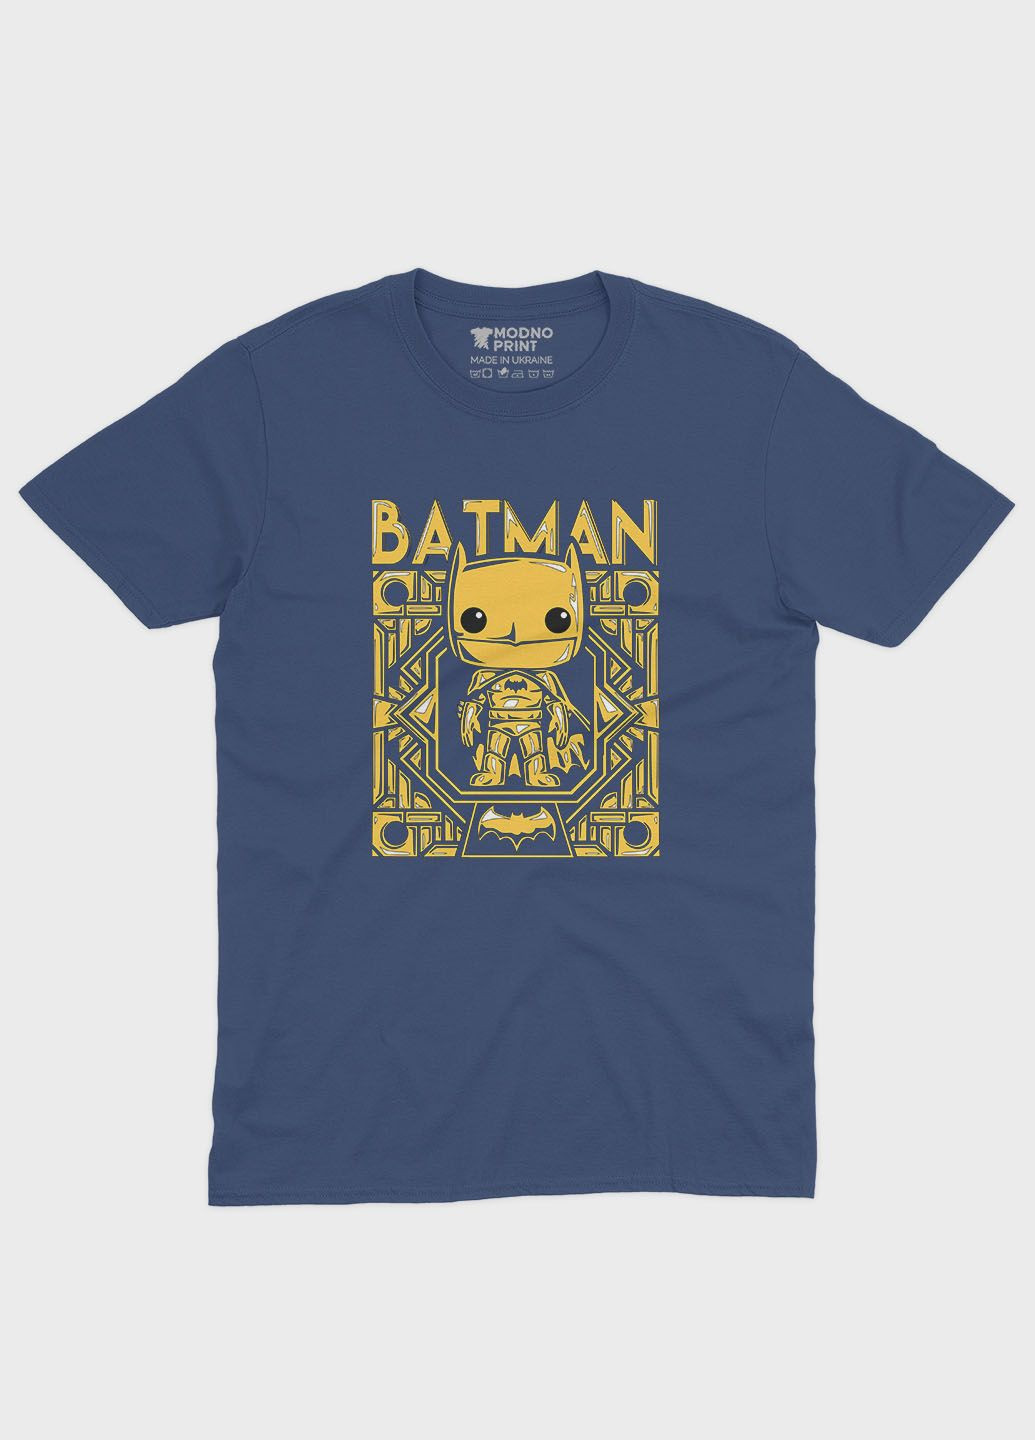 Темно-синя демісезонна футболка для хлопчика з принтом супергероя - бетмен (ts001-1-nav-006-003-004-b) Modno